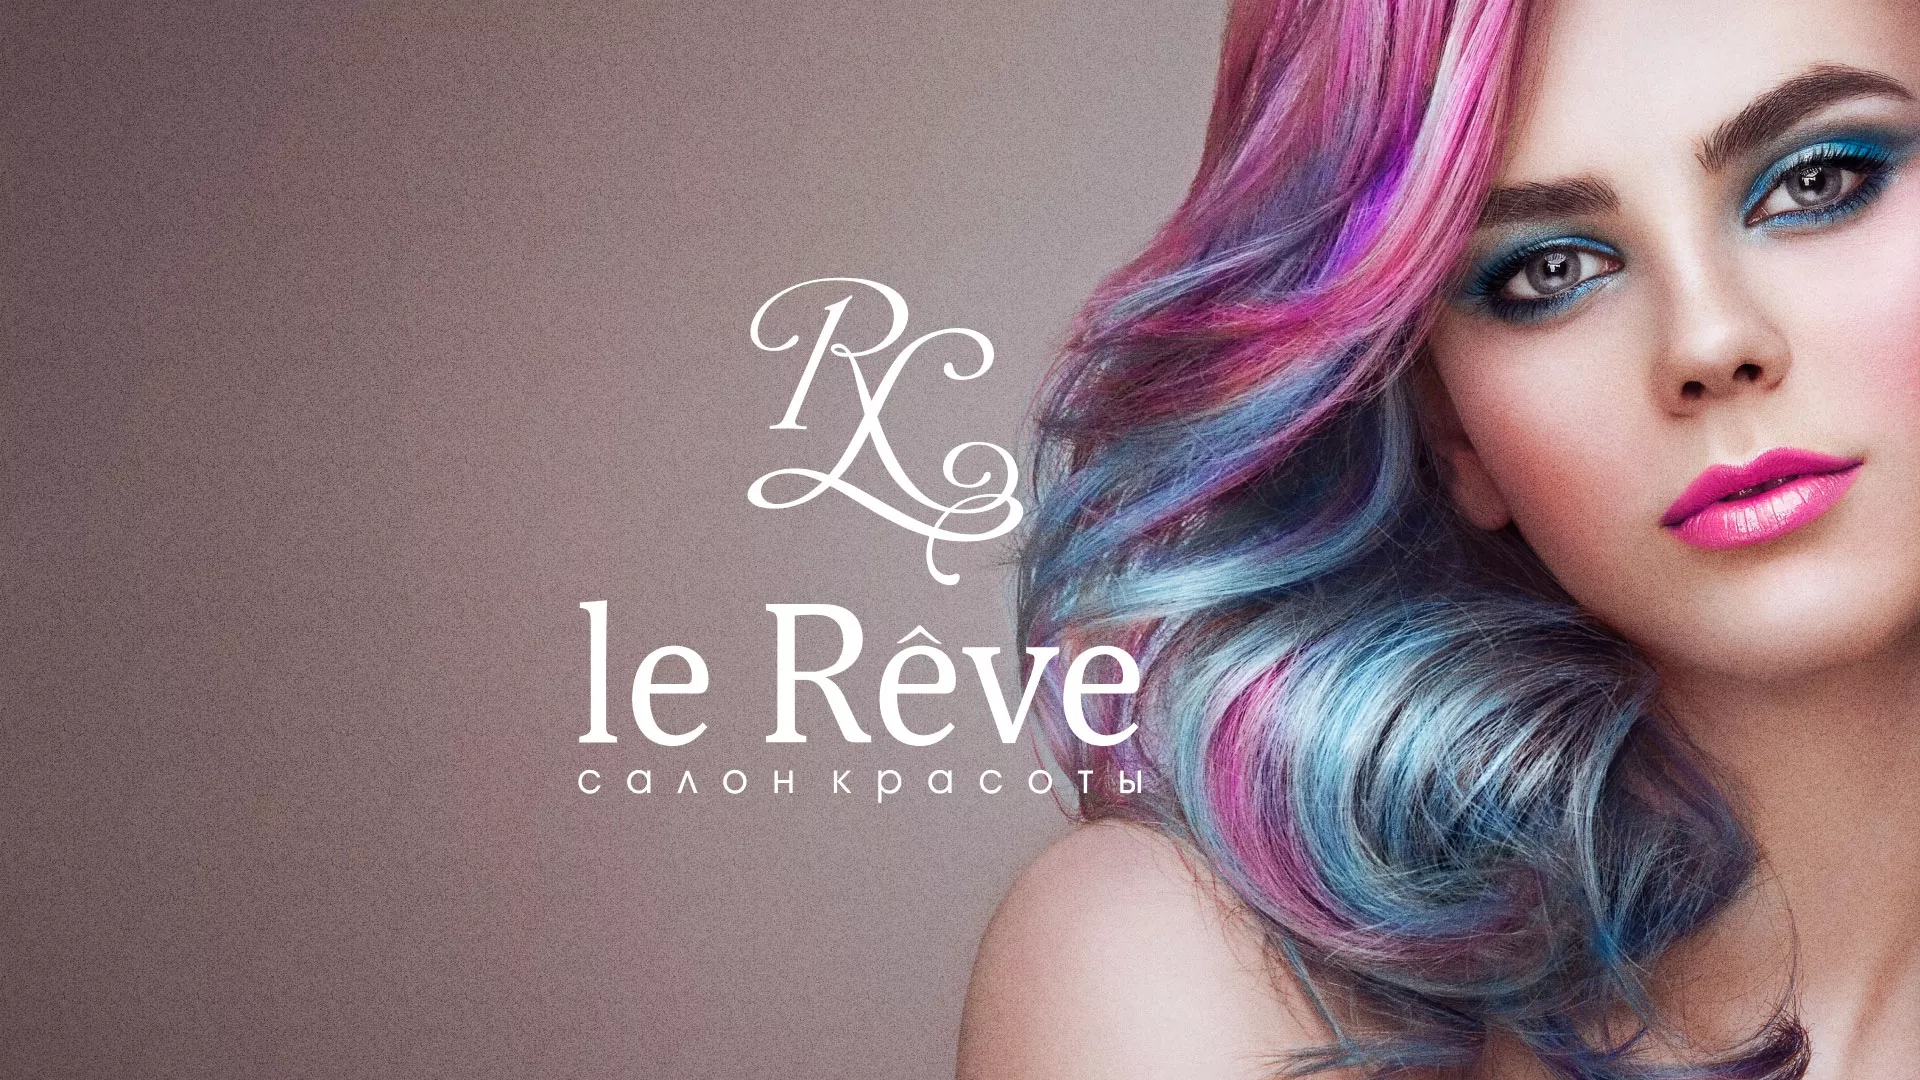 Создание сайта для салона красоты «Le Reve» в Баксане